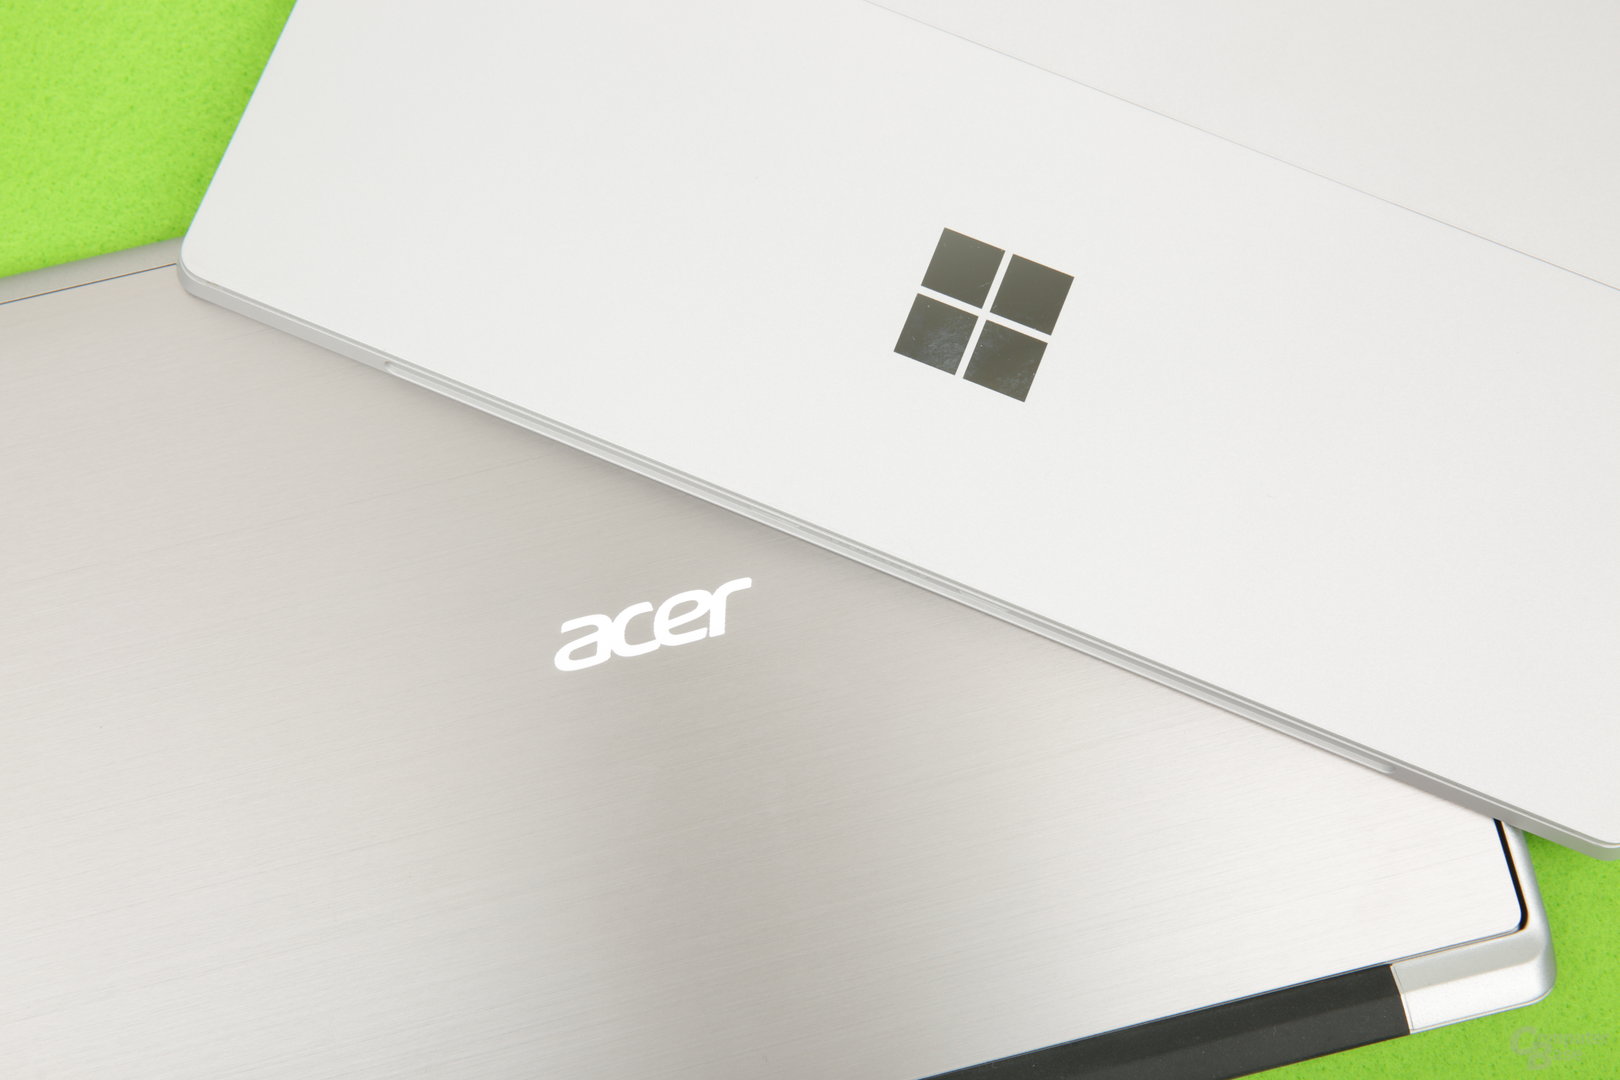 Acer Switch Alpha 12 und Surface Pro 4 sind durchaus Konkurrenten